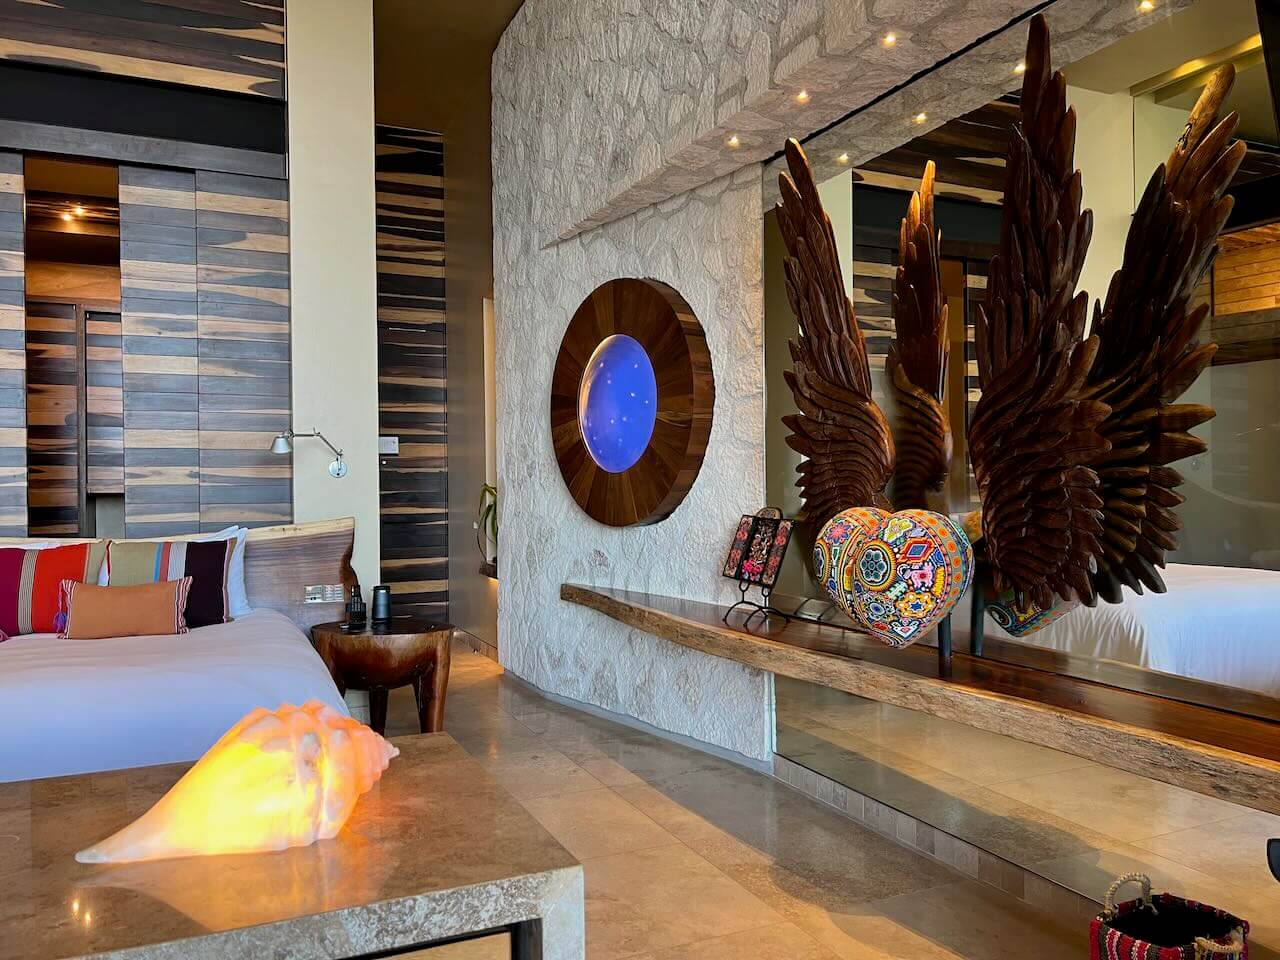 Hotel room with natural materials at La Casa de la Playa luxury hotel in Mexico.